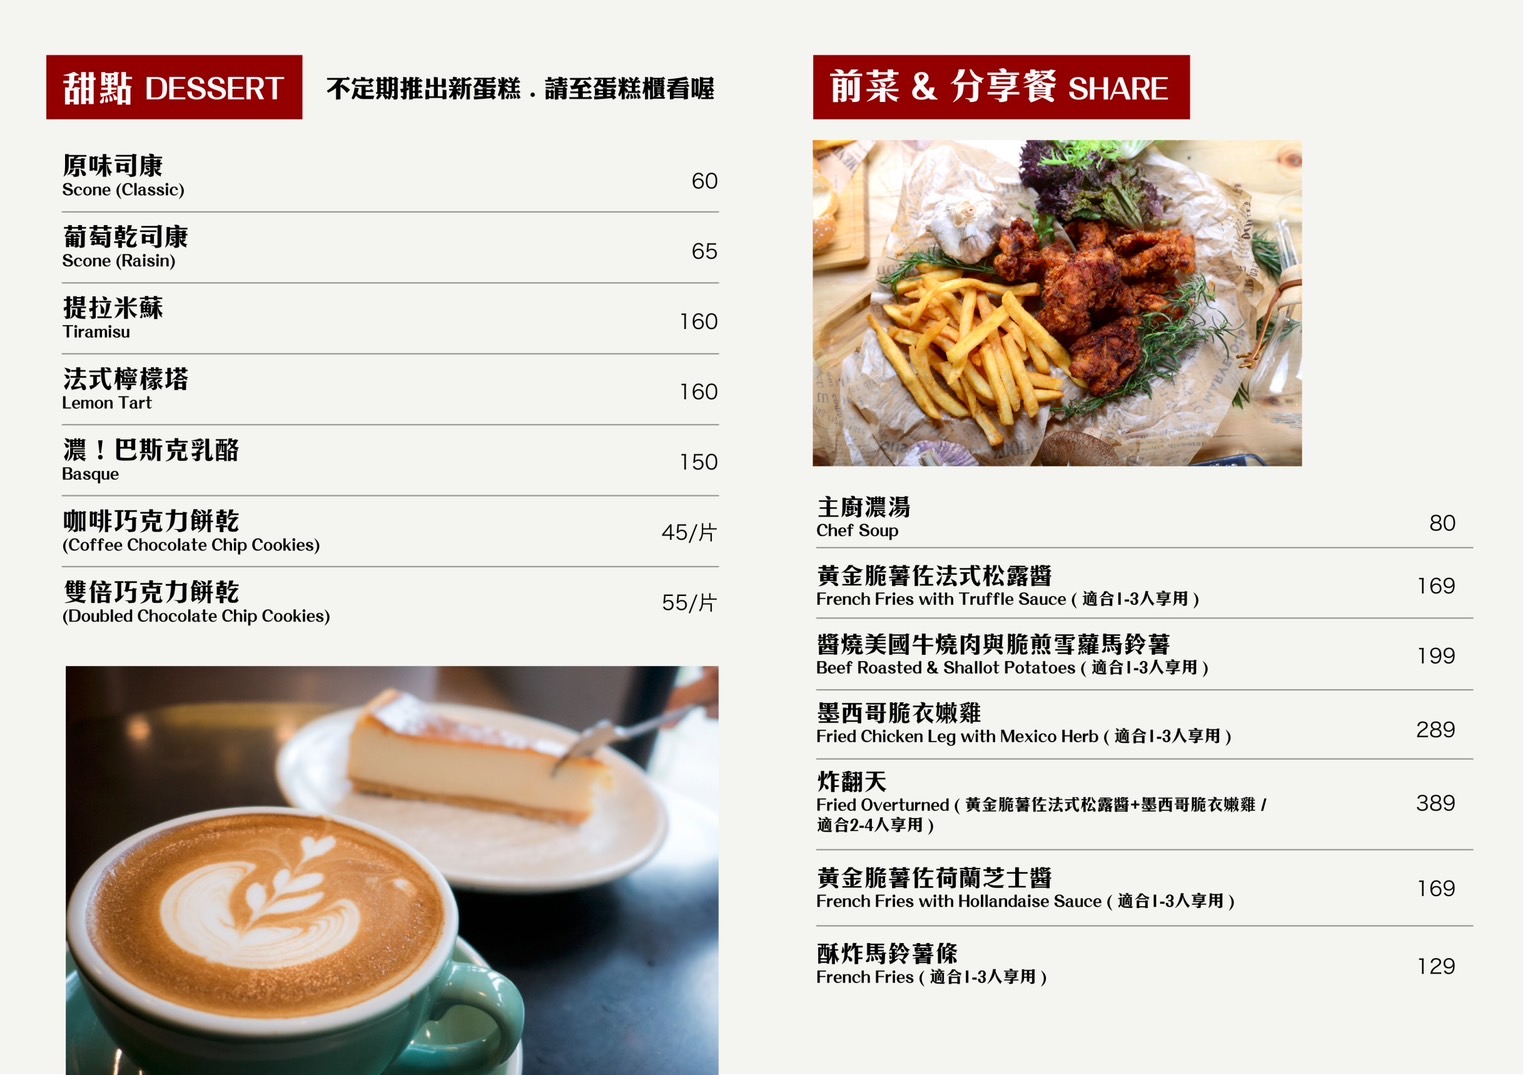 雙連站咖啡『RAYCA COFFEE 自家烘焙精品咖啡』搬遷到台北淡水紅毛城旁 @梅格(Angelababy)享樂日記